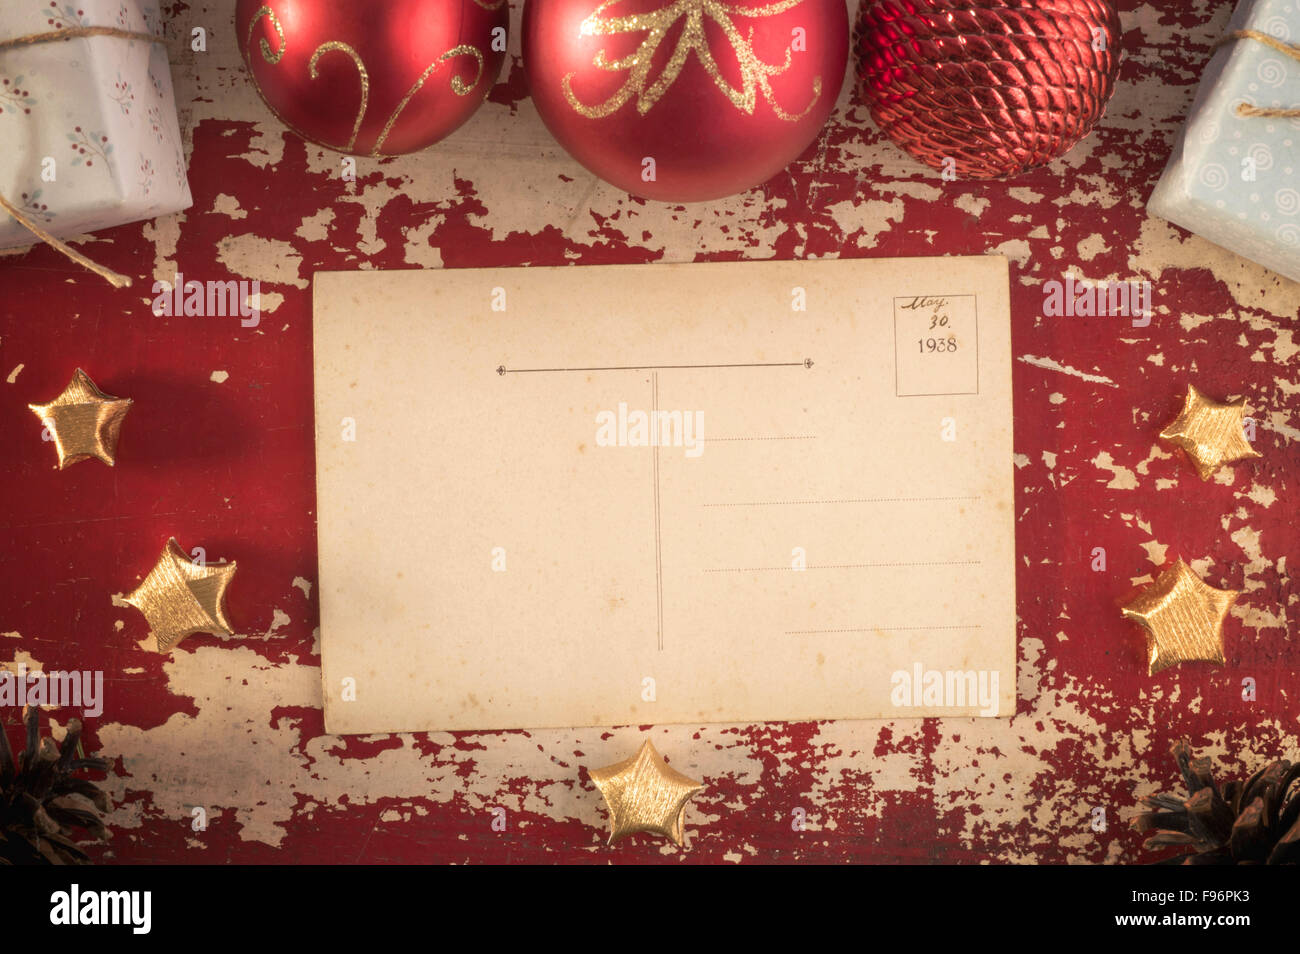 Joyeux Noël haut Afficher sur carte postale vintage retro grunge background avec ornement de Noël Décoration. Comprend clipping path Banque D'Images